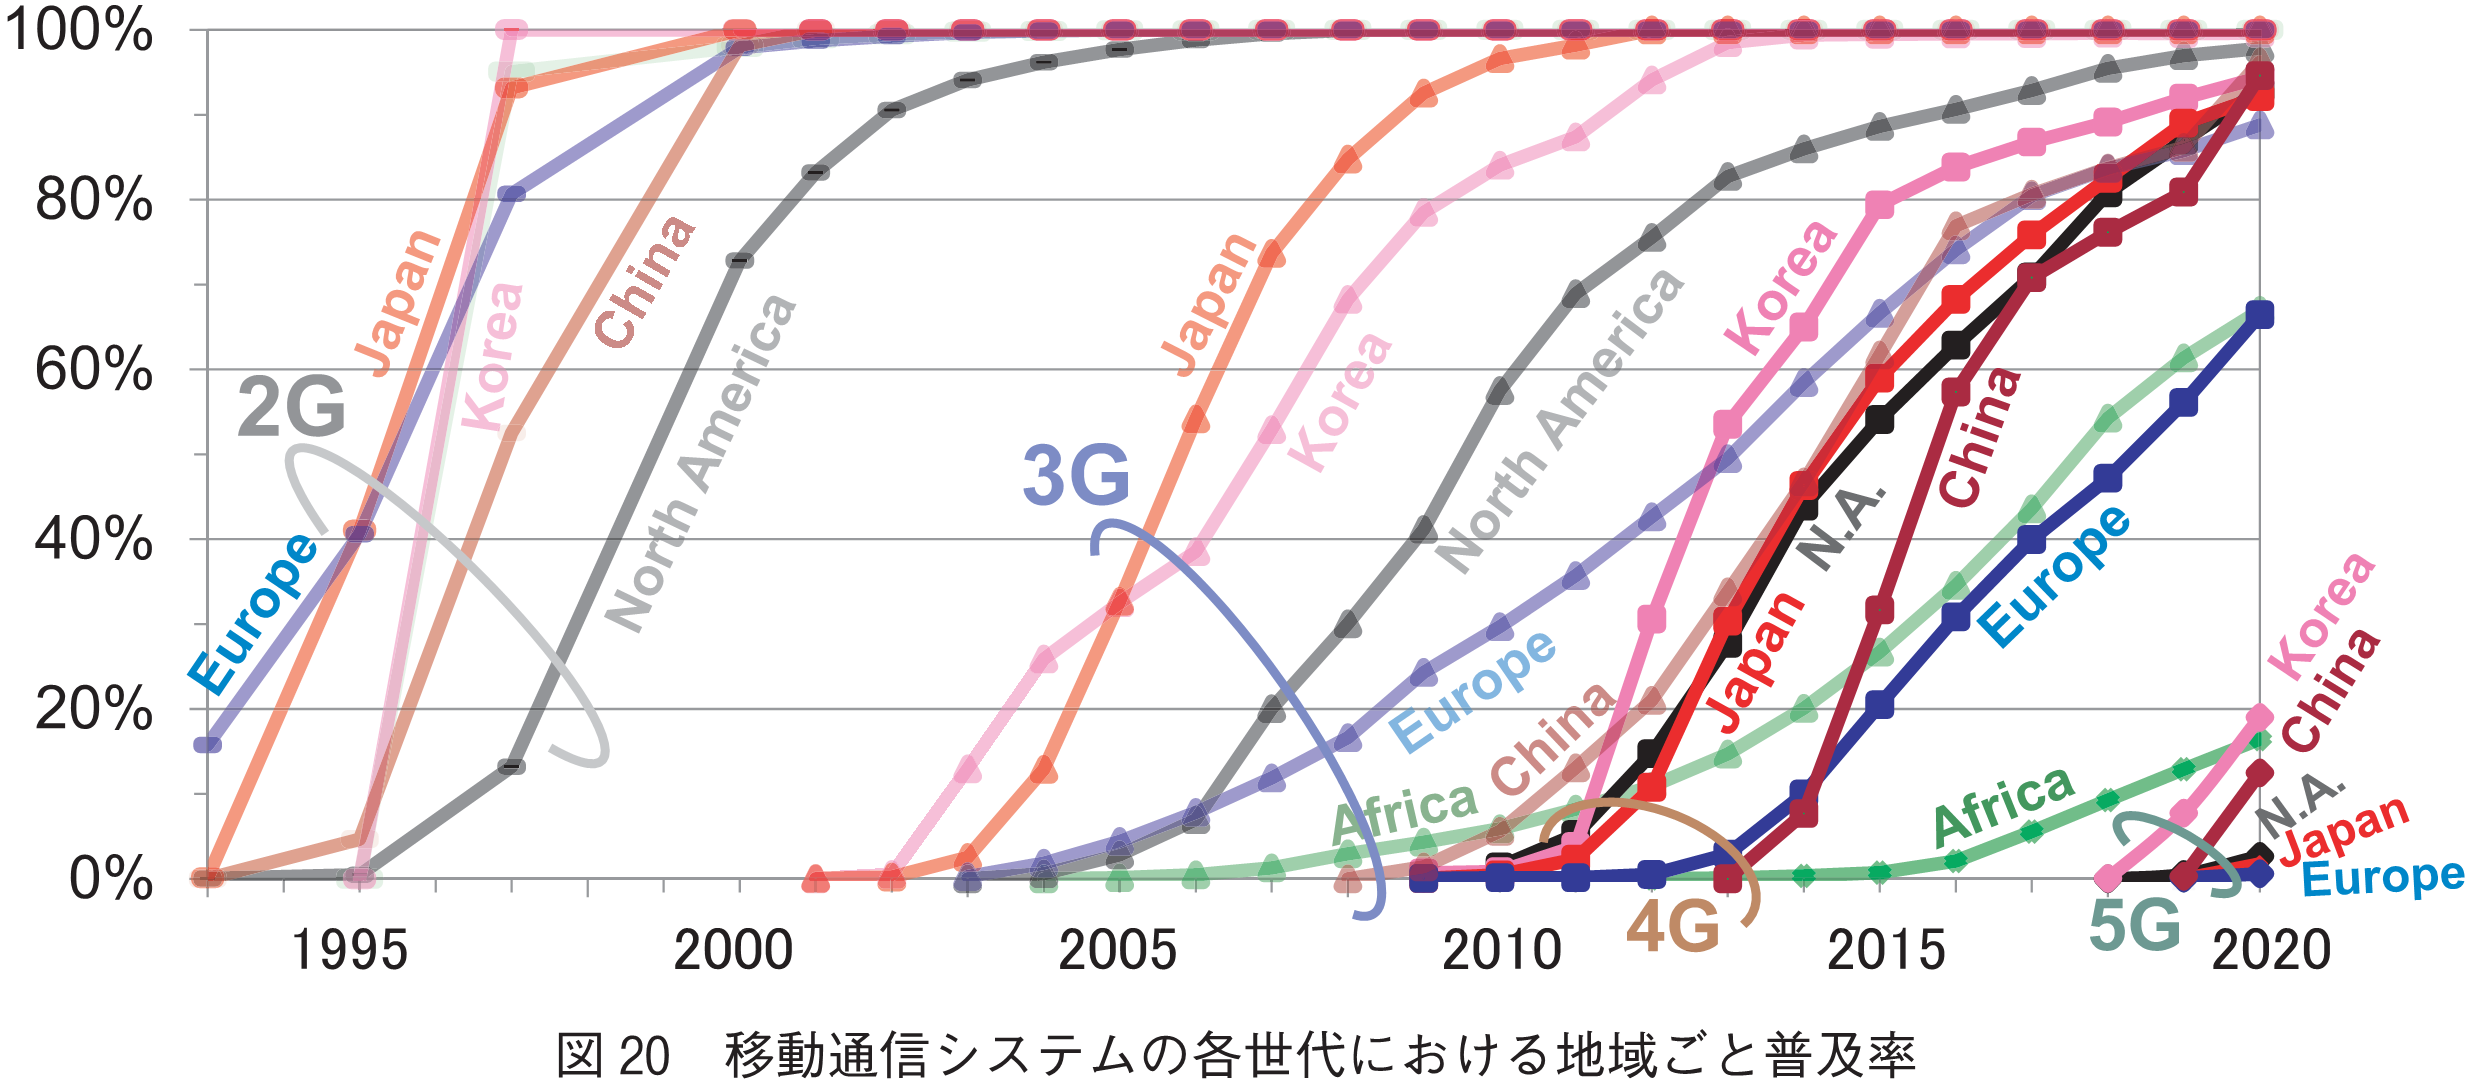 図20　移動通信システムの各世代における地域ごと普及率